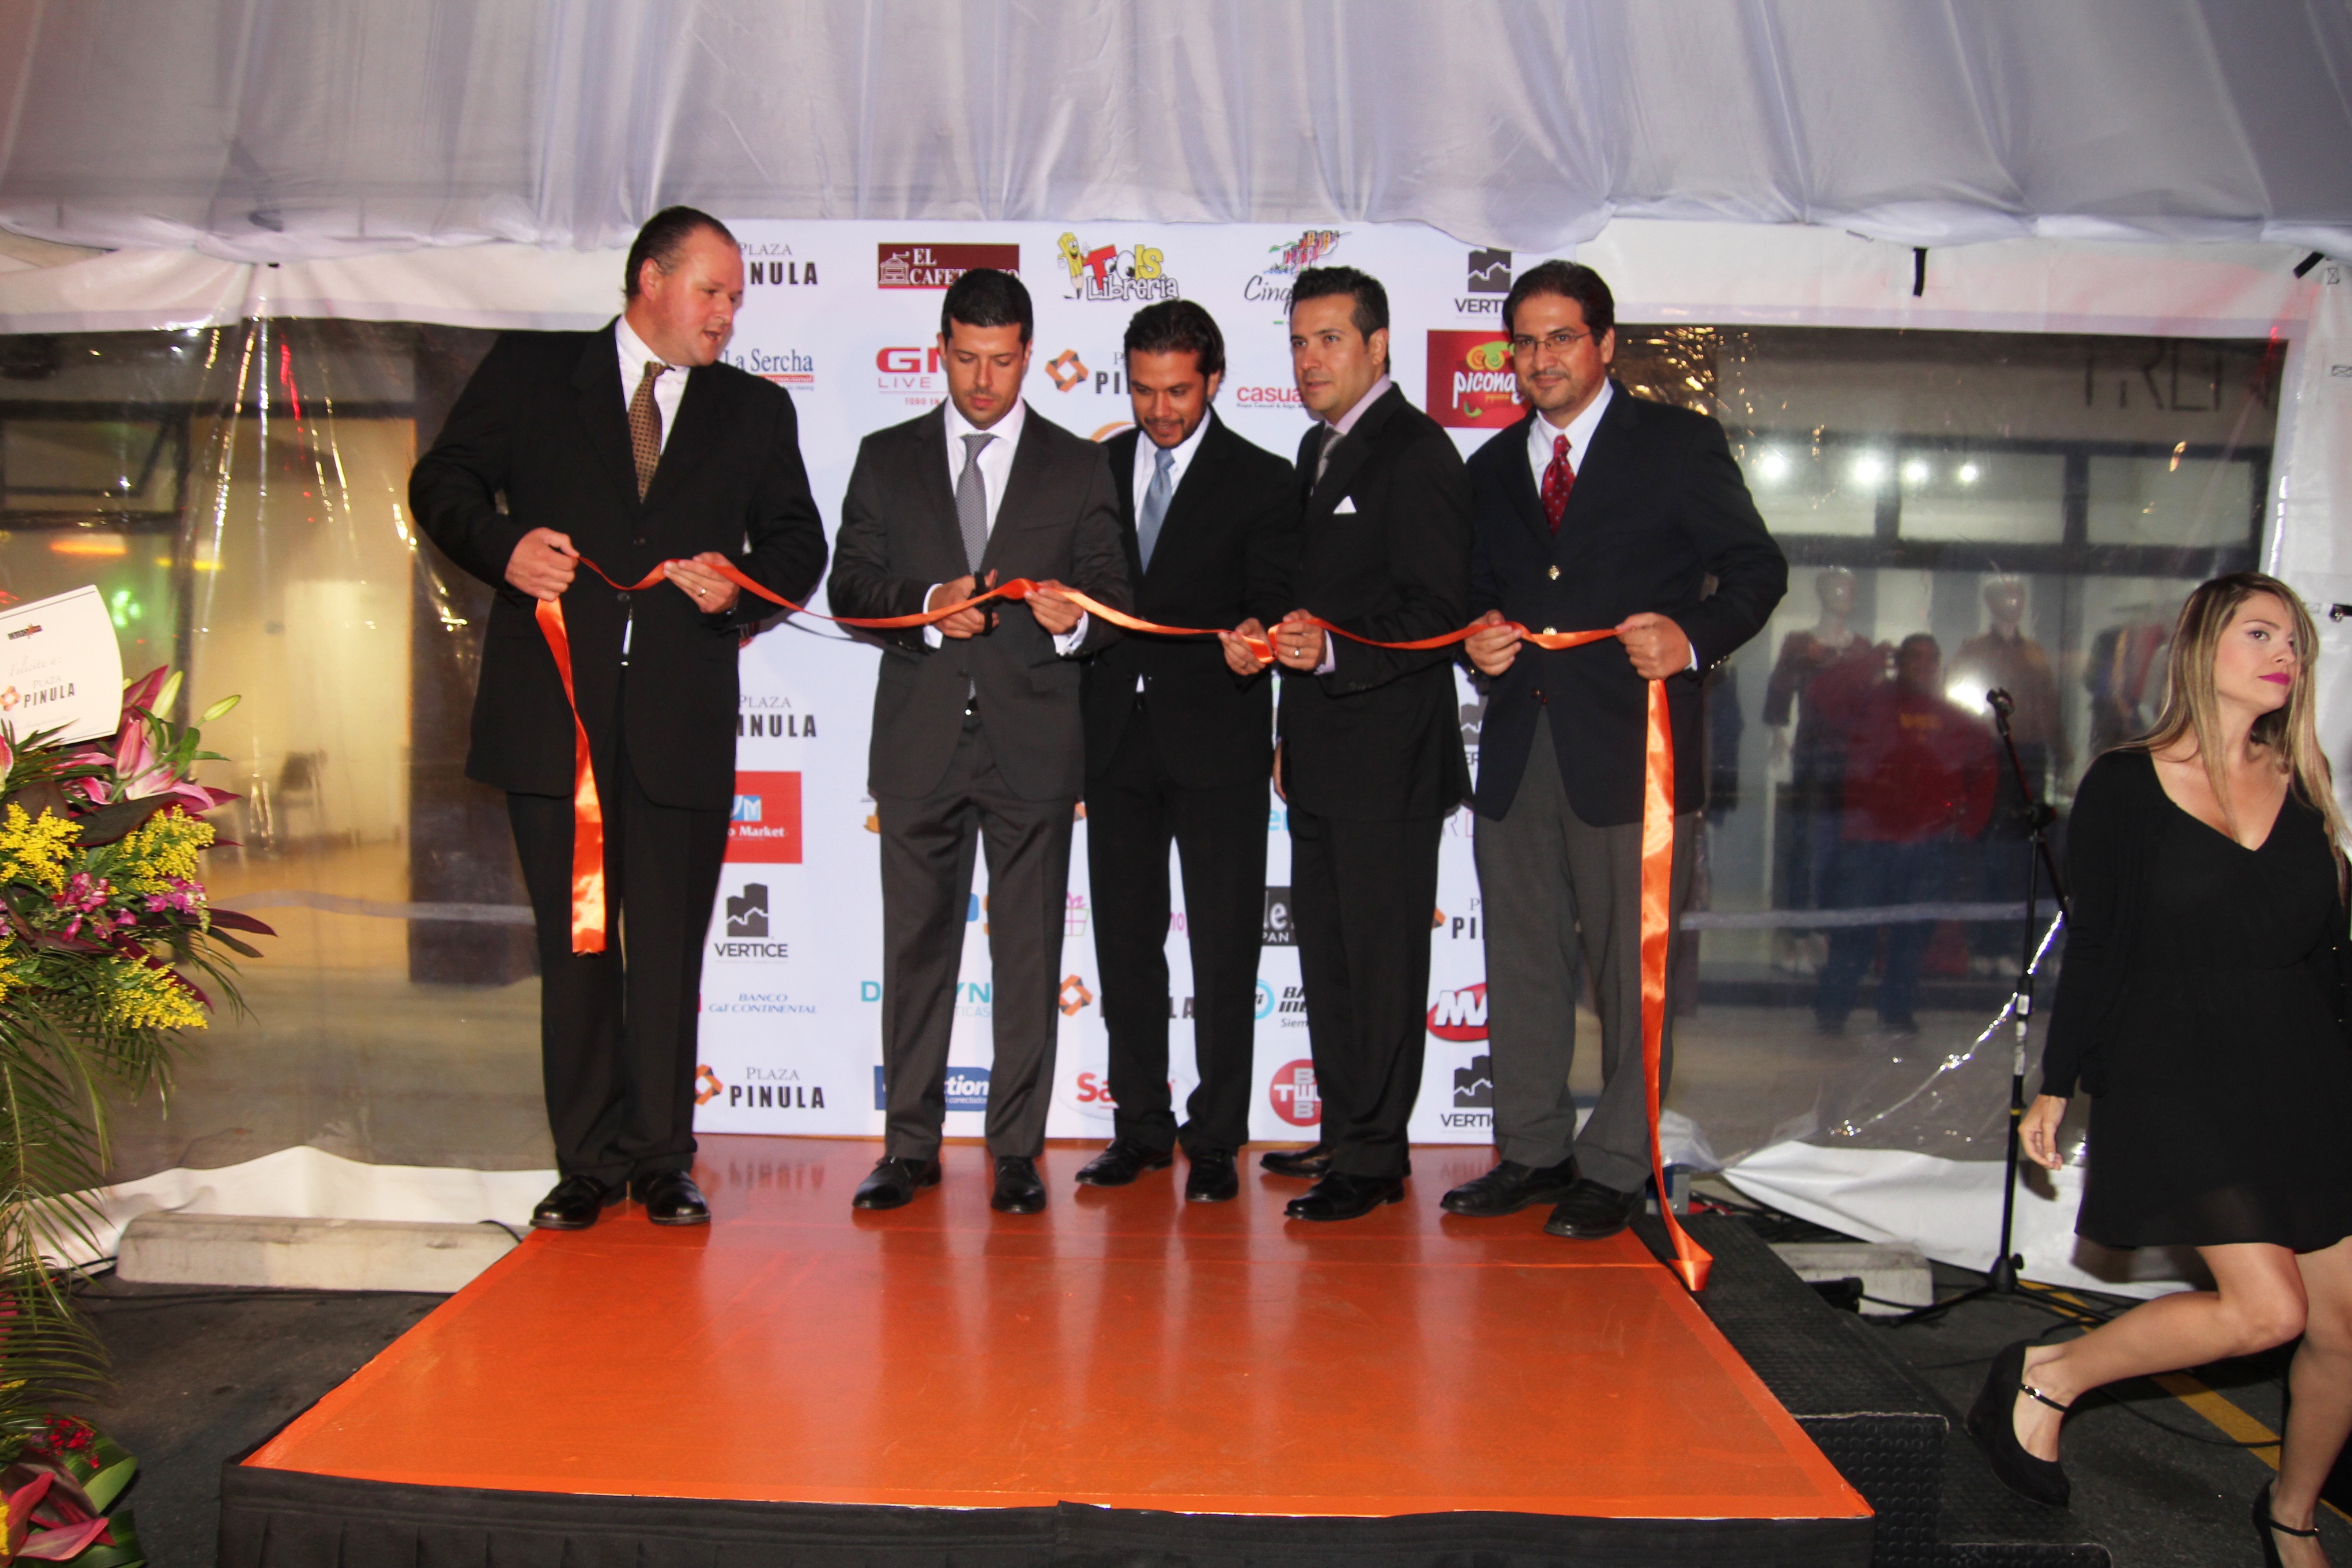 Se inaugura nuevo centro comercial Plaza Pinula